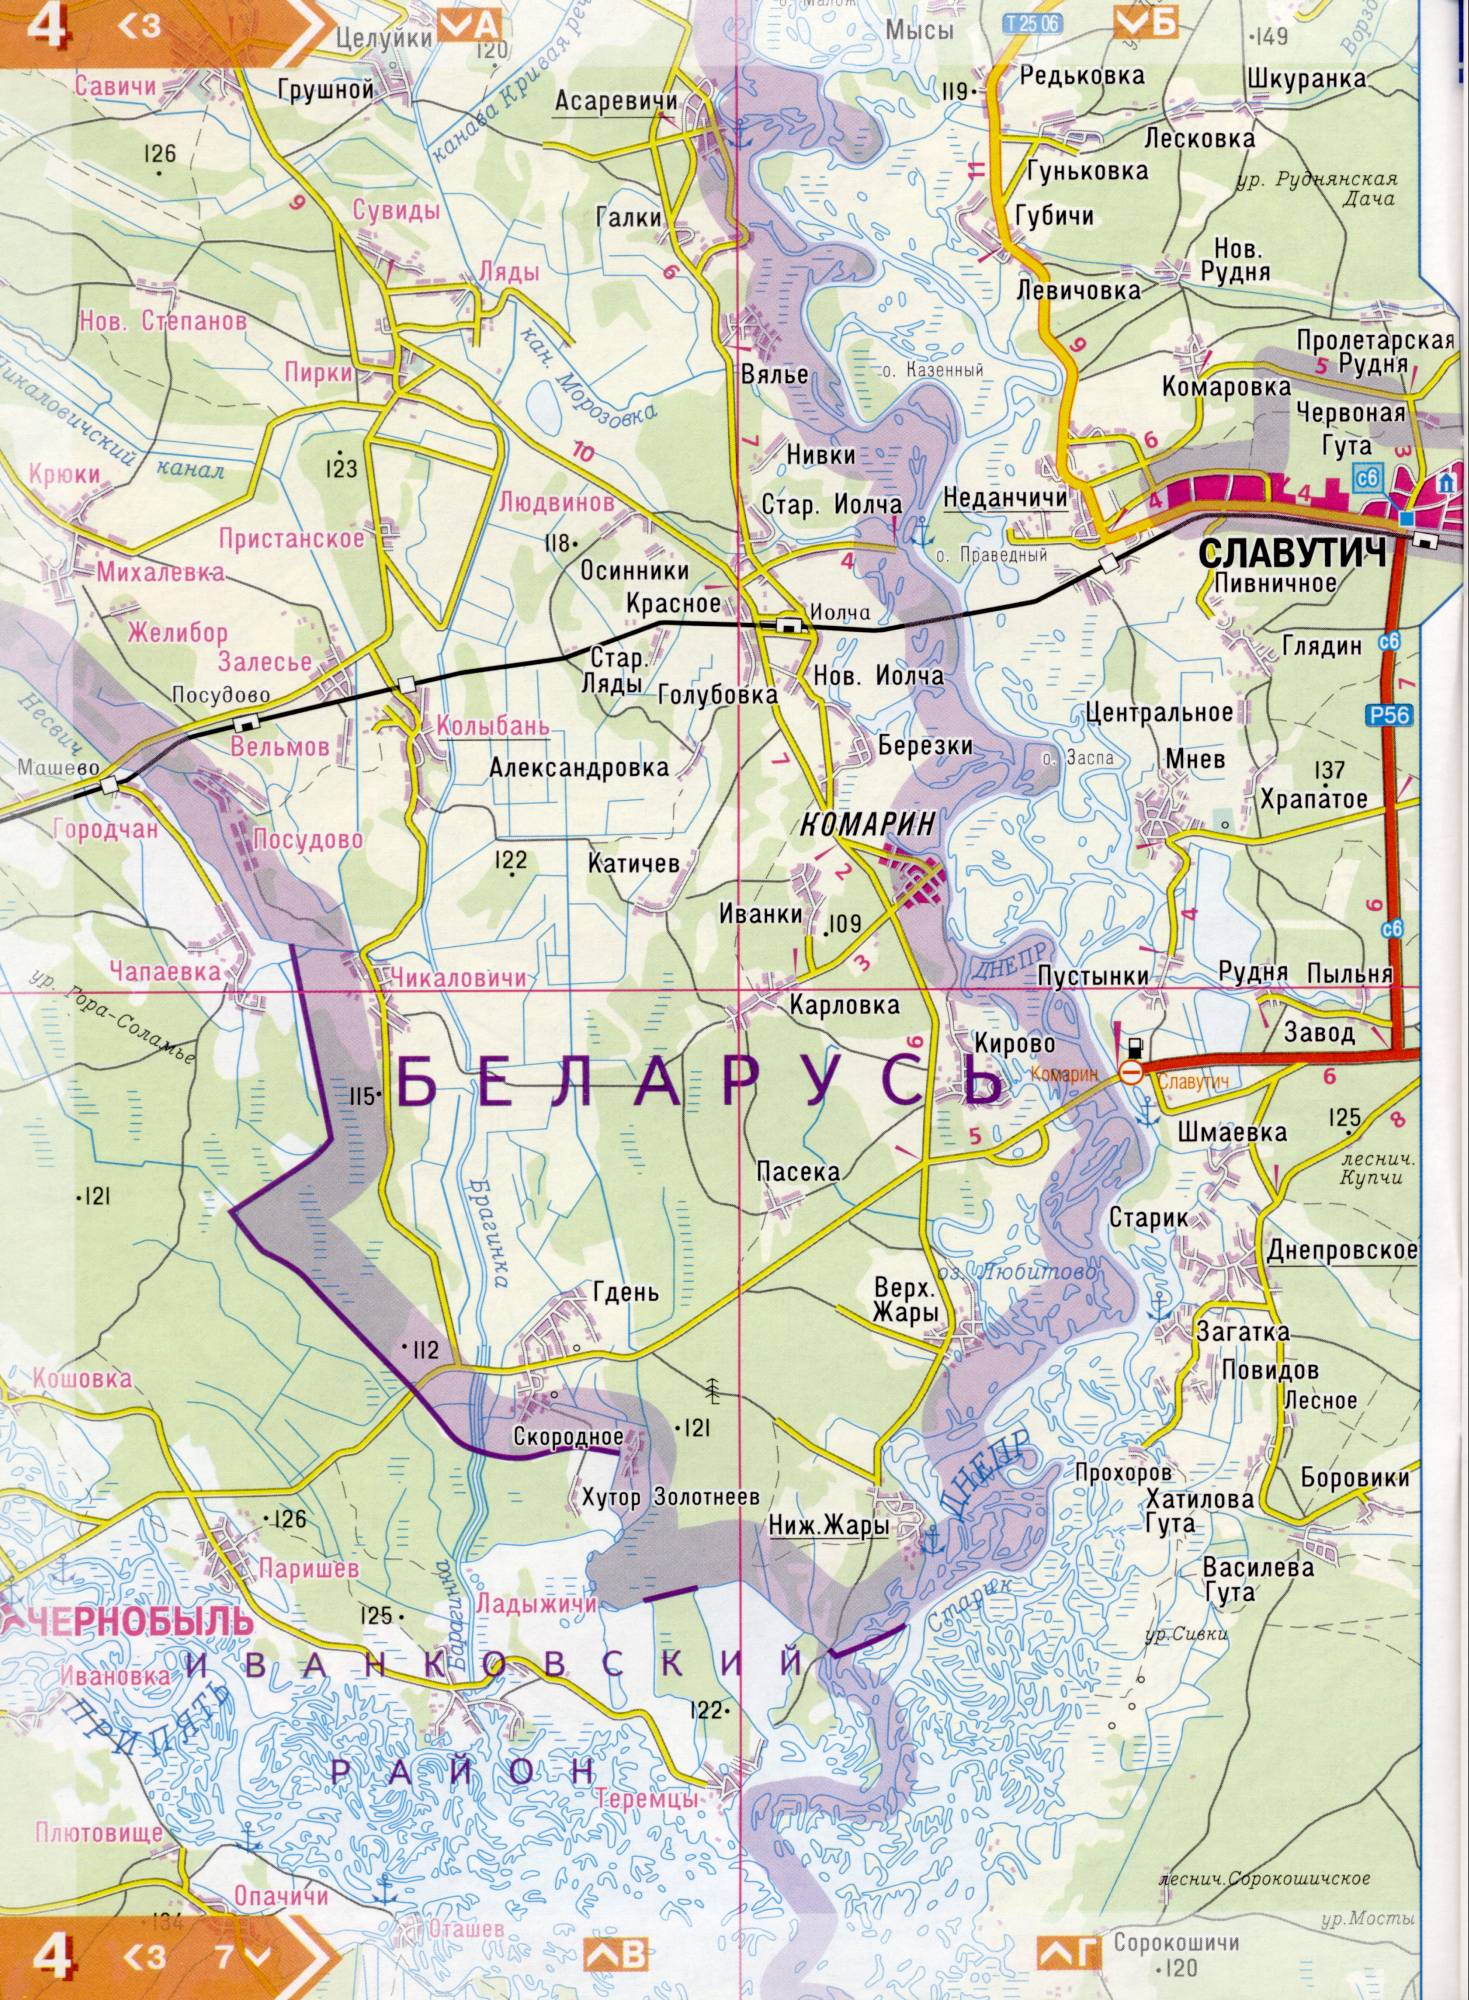 Atlas von der Region Kiew. Eine detaillierte Karte der Region Kiew von dem Atlas von Autobahnen. Kiewer Gebiet auf einer detaillierten Karte Maßstab 1cm = 3km. Frei, C0 - Slavutych